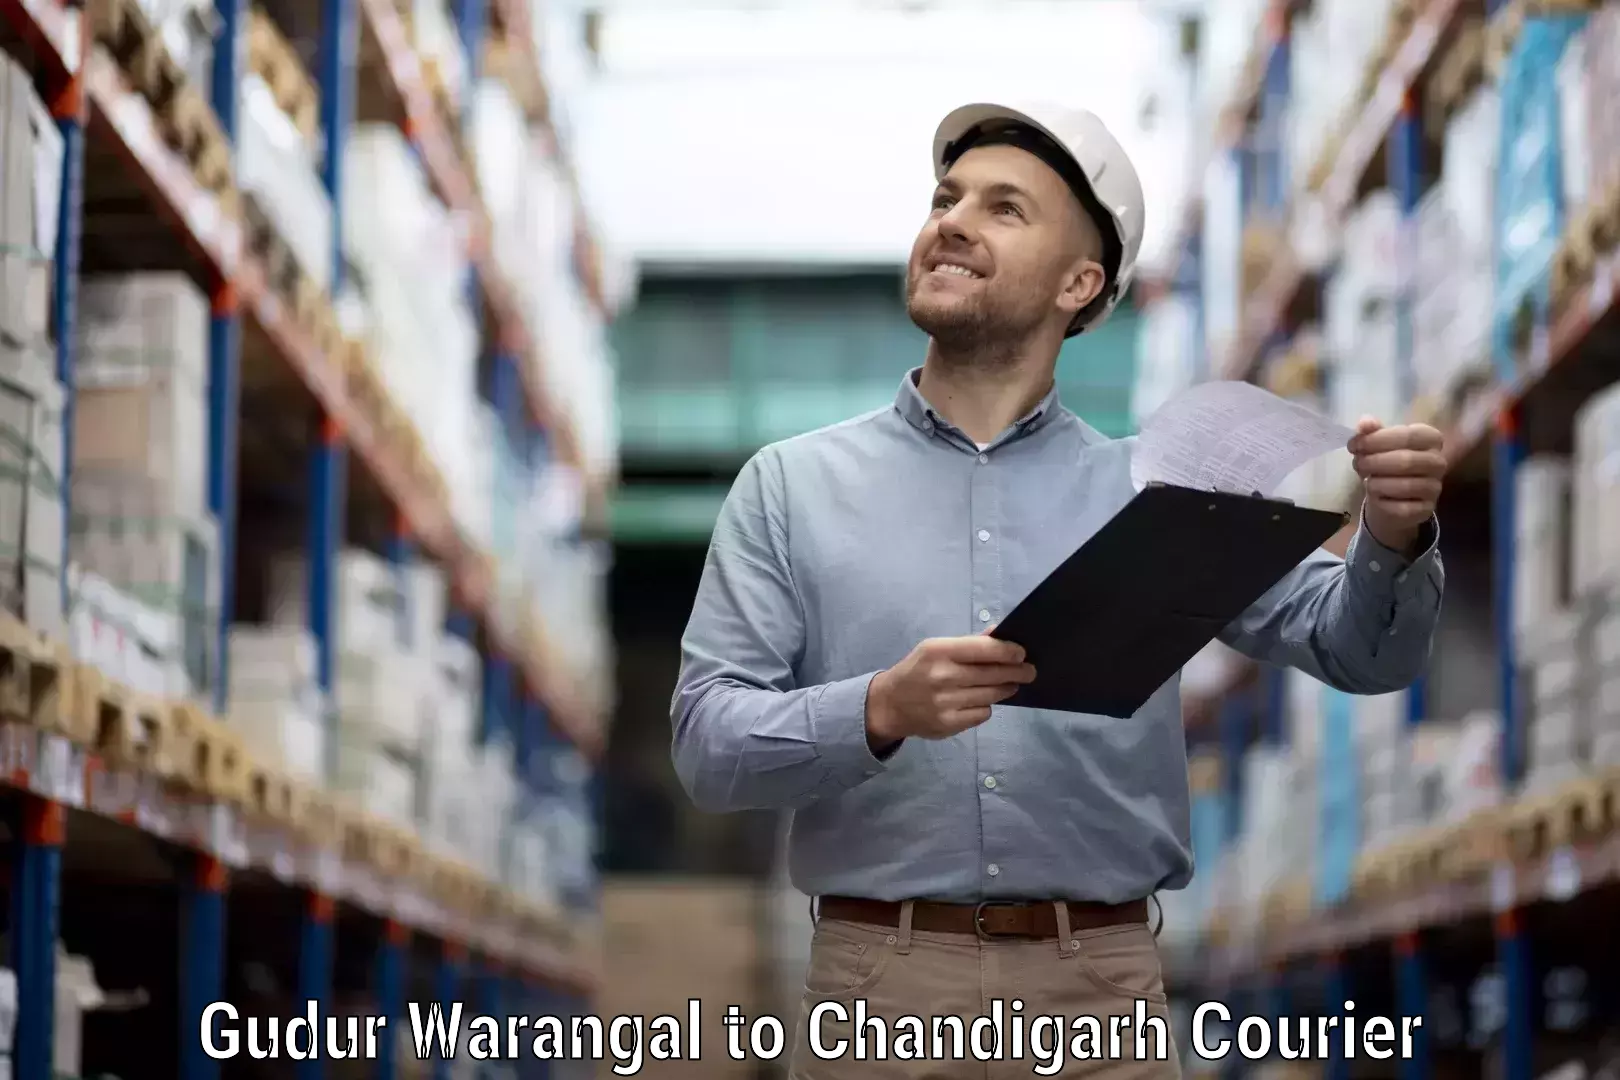 Special handling courier Gudur Warangal to Chandigarh